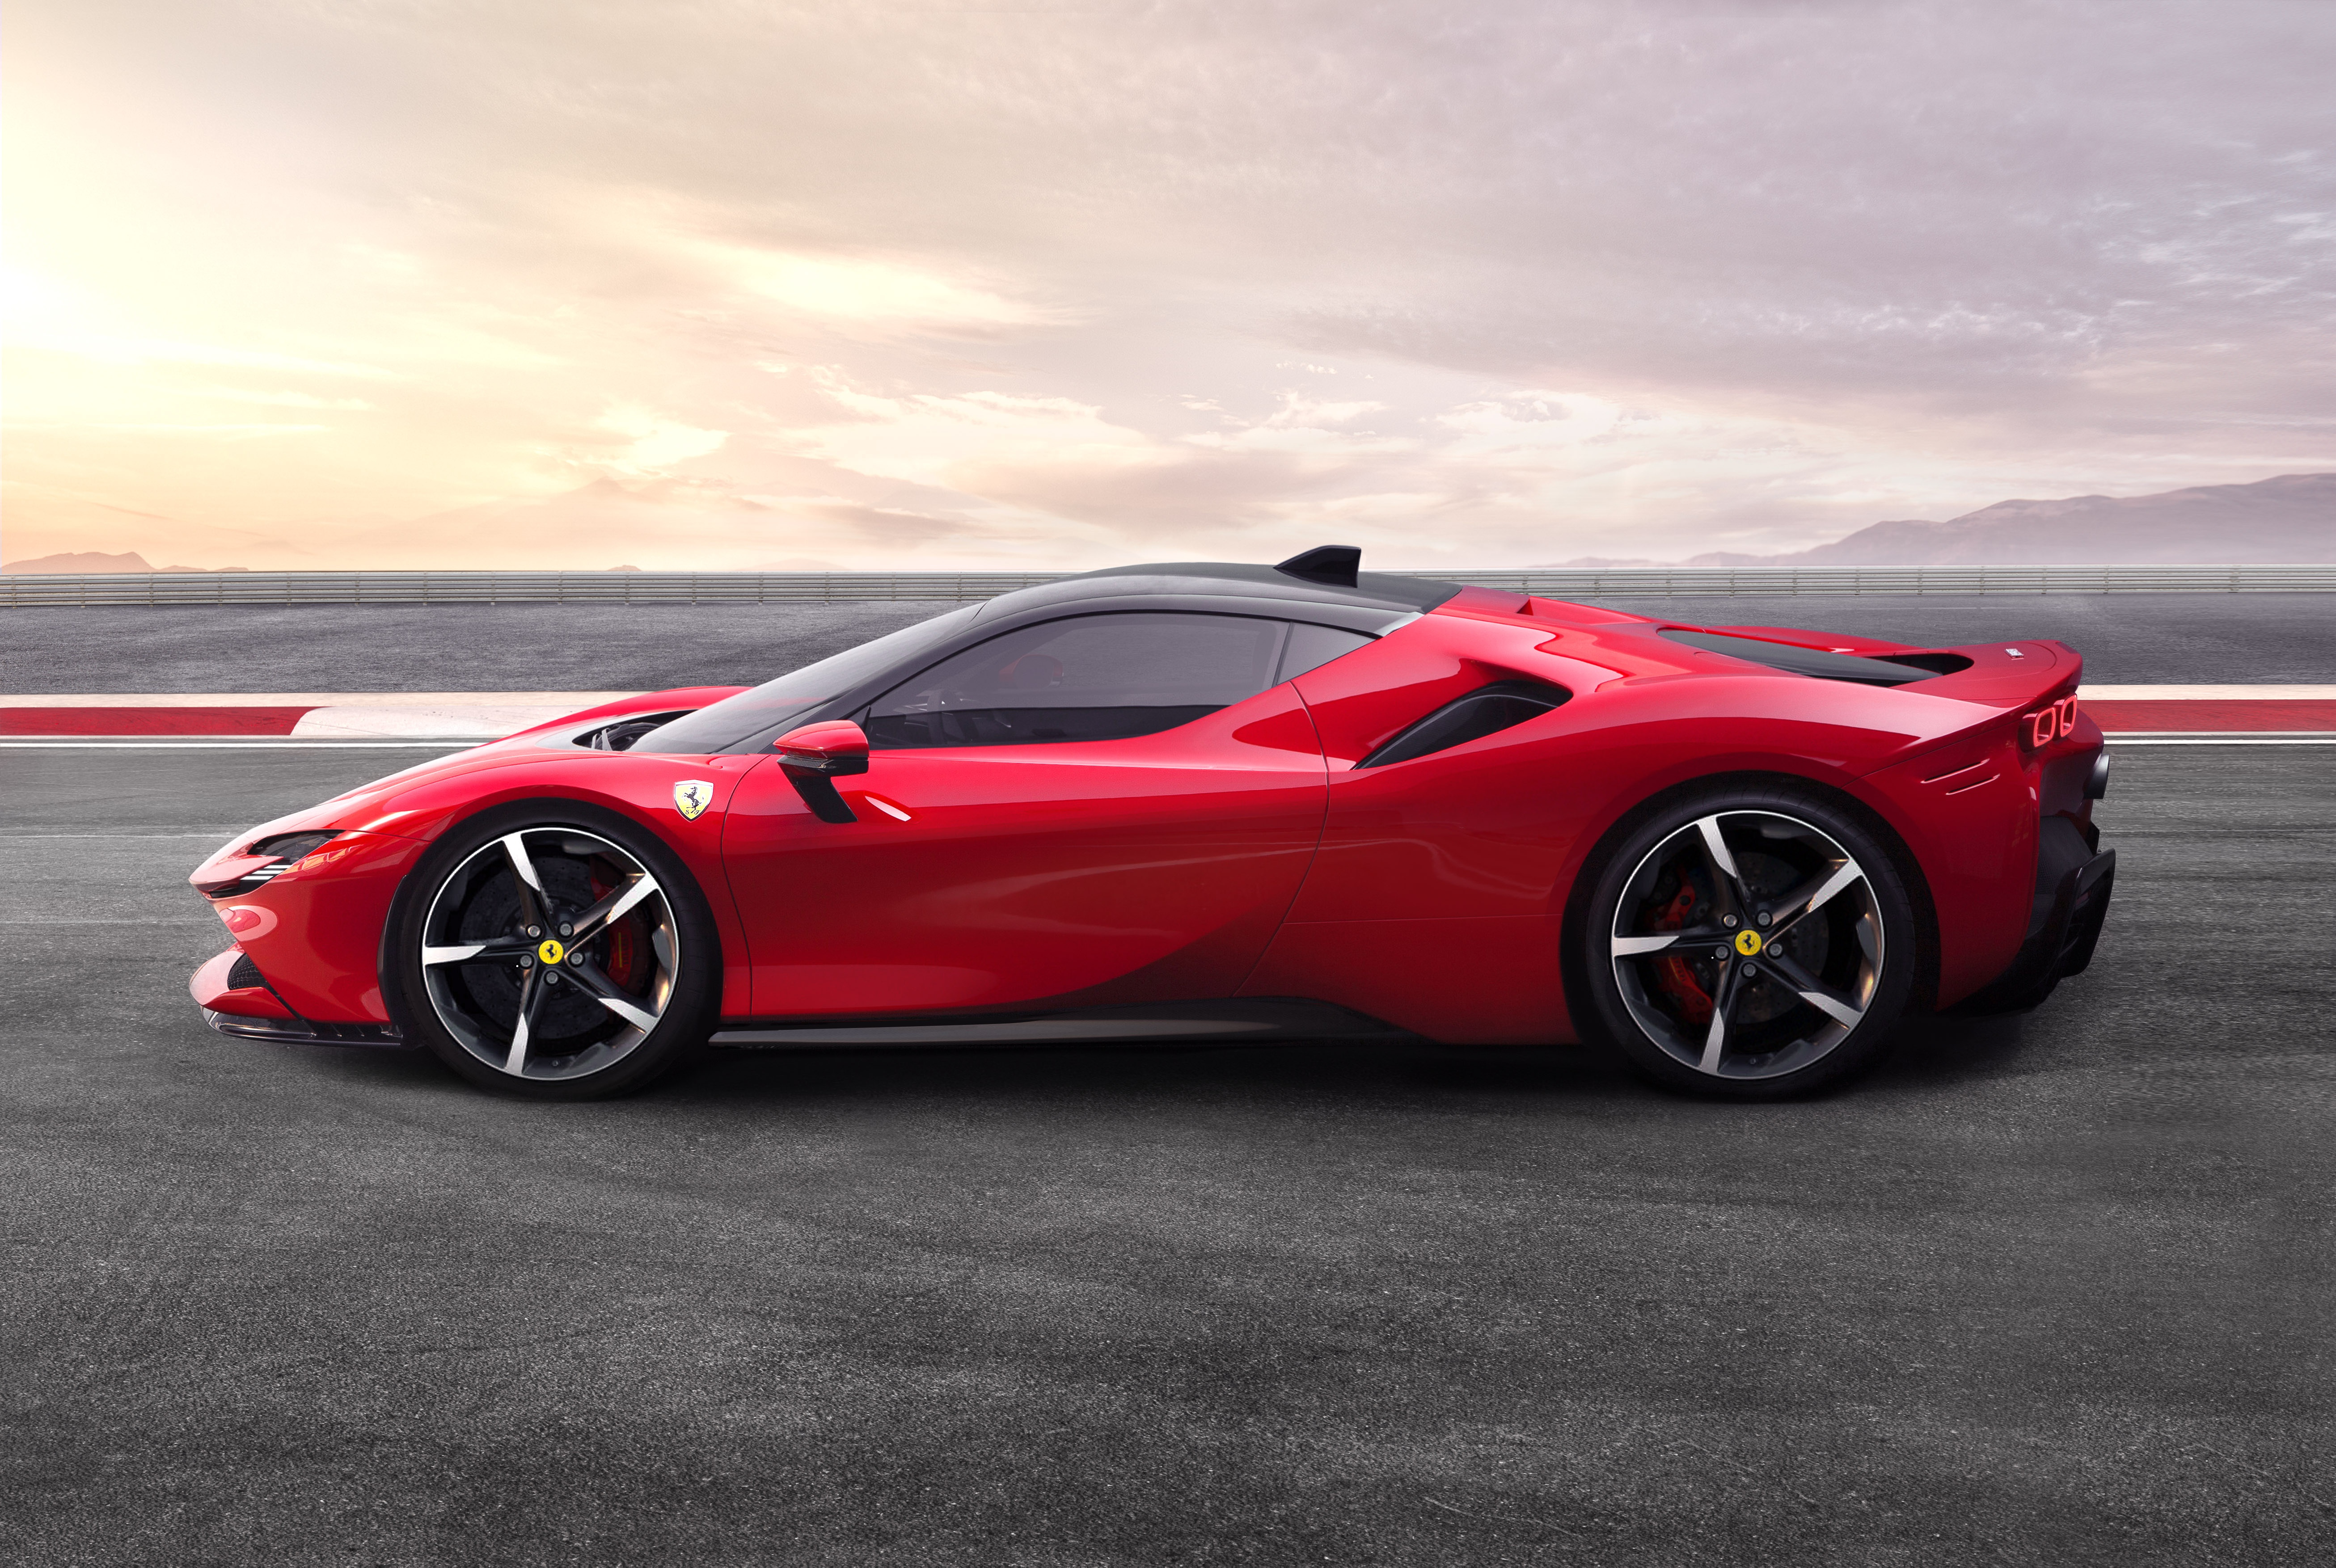 Télécharger des fonds d'écran Ferrari Sf90 Stradale HD